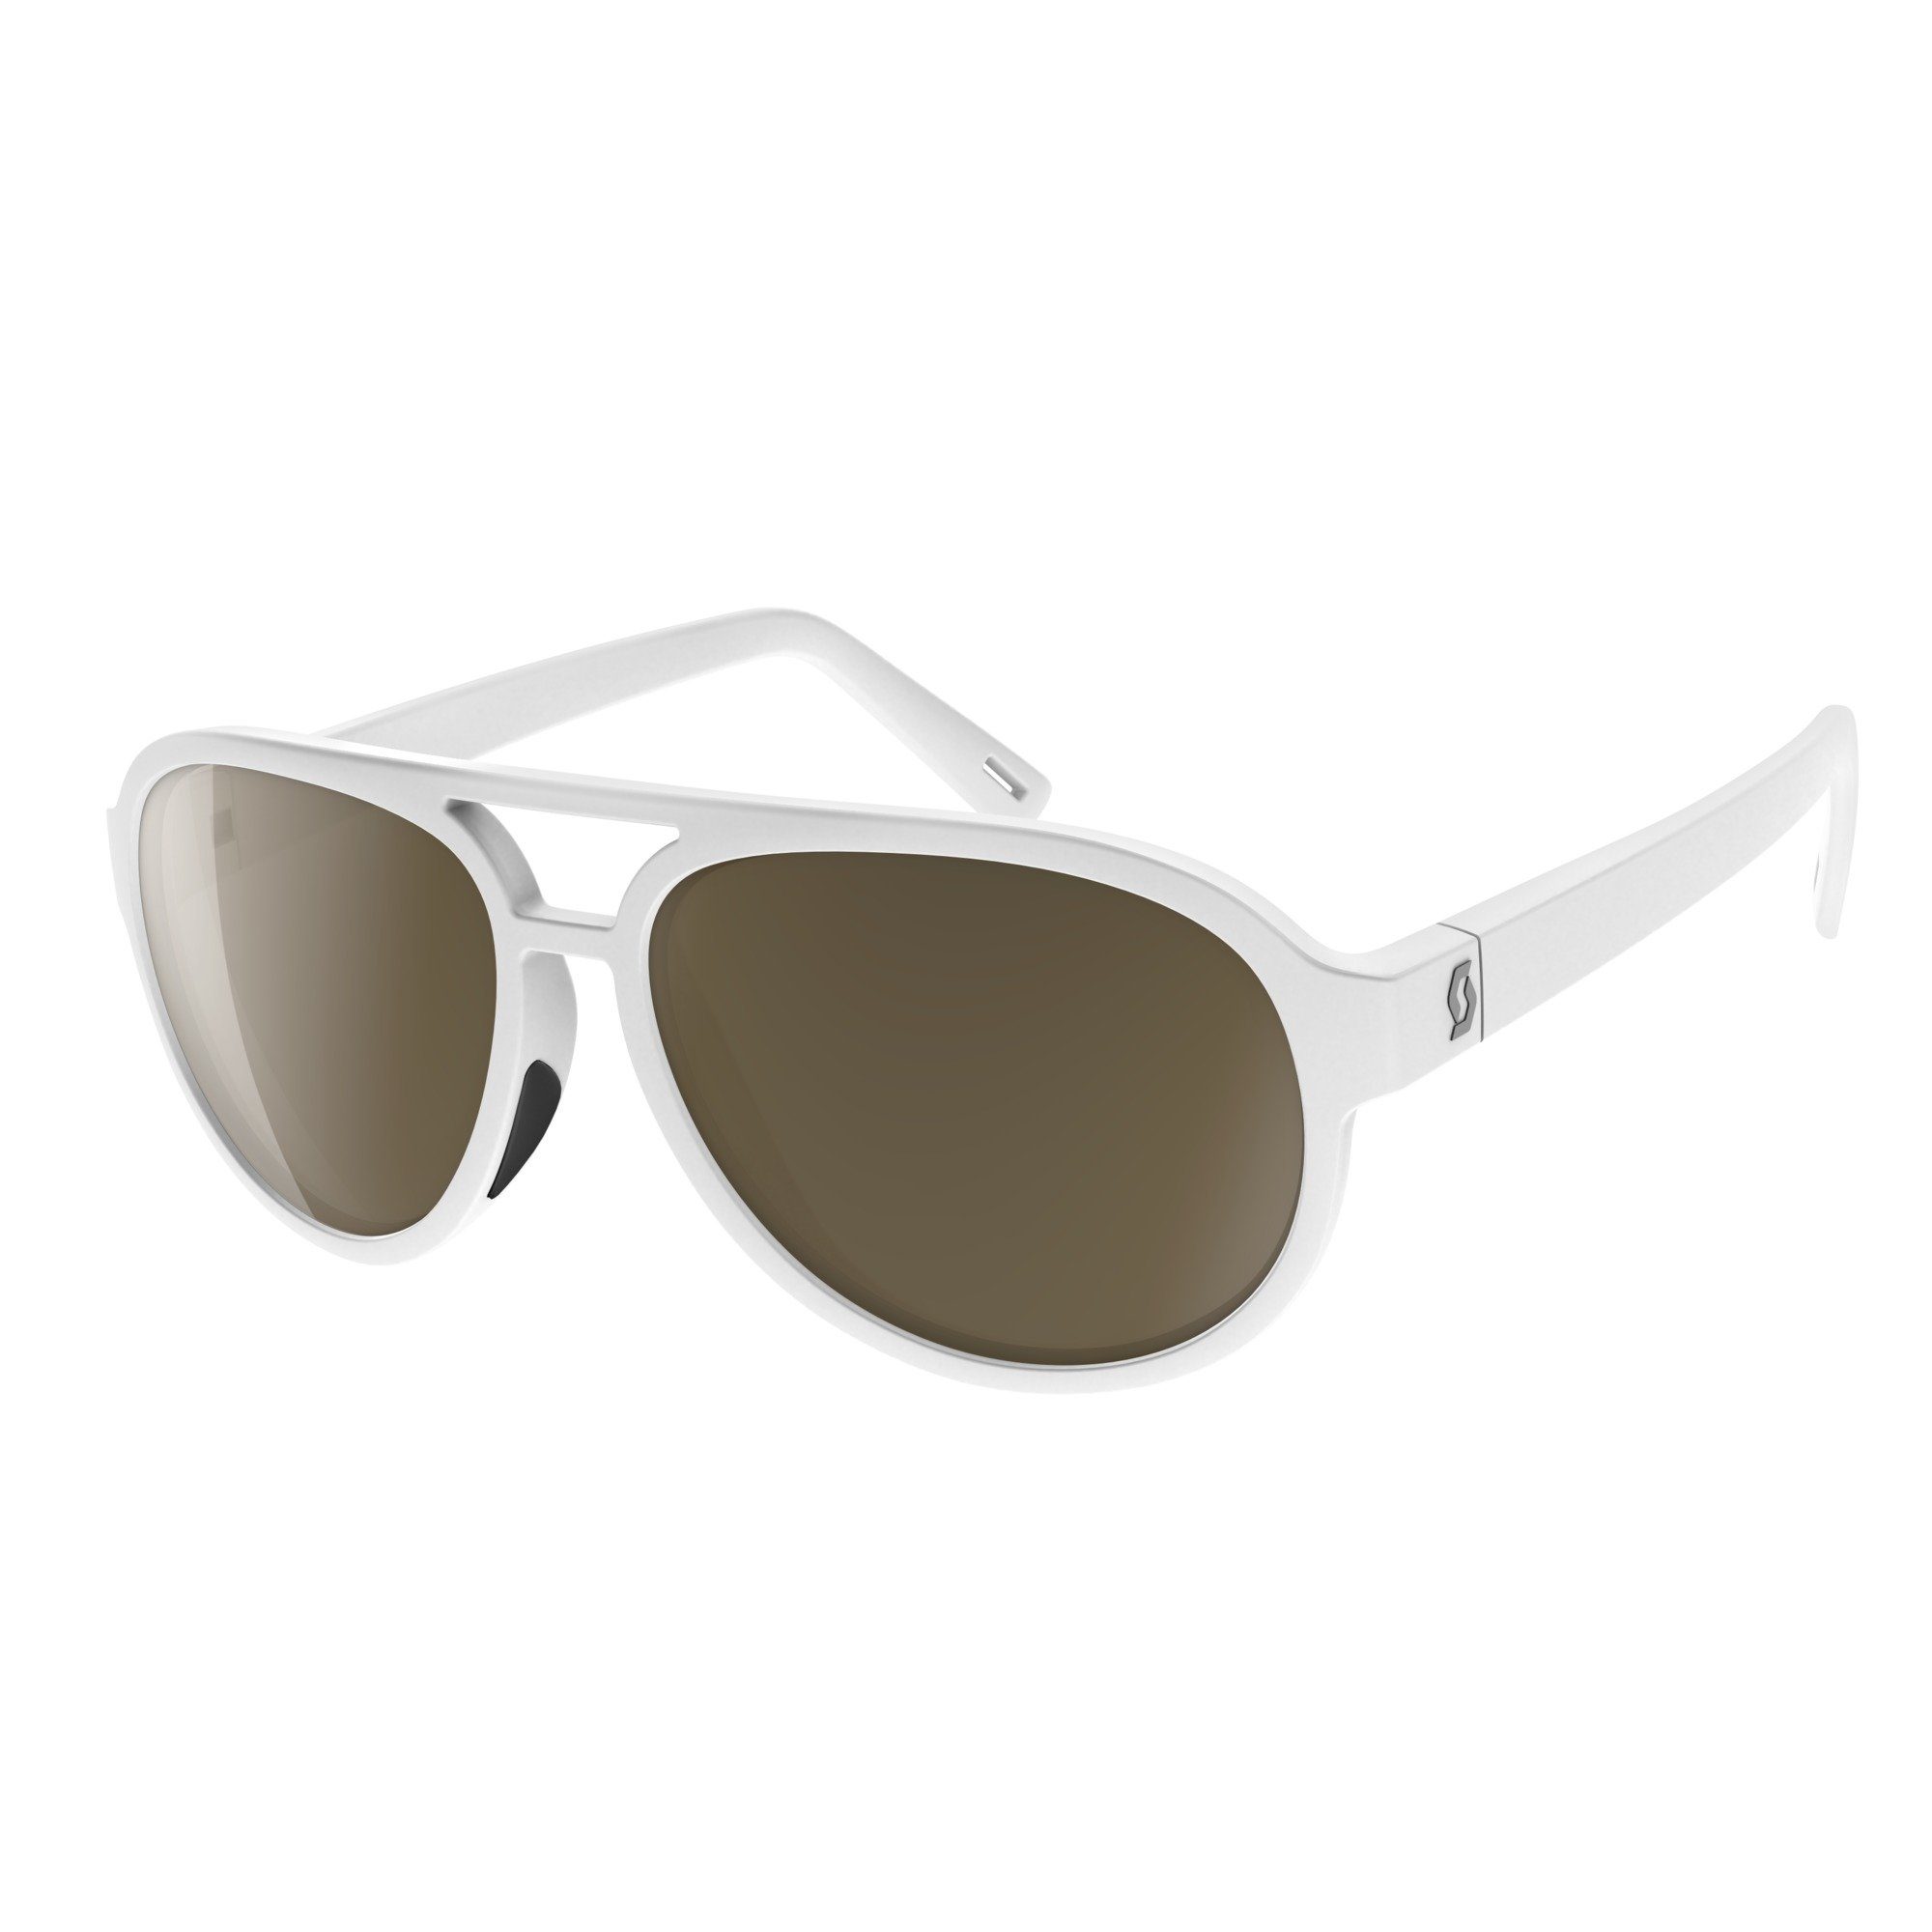 Bass Sonnenbrille weiß/braun Scott Scott Sportbrille